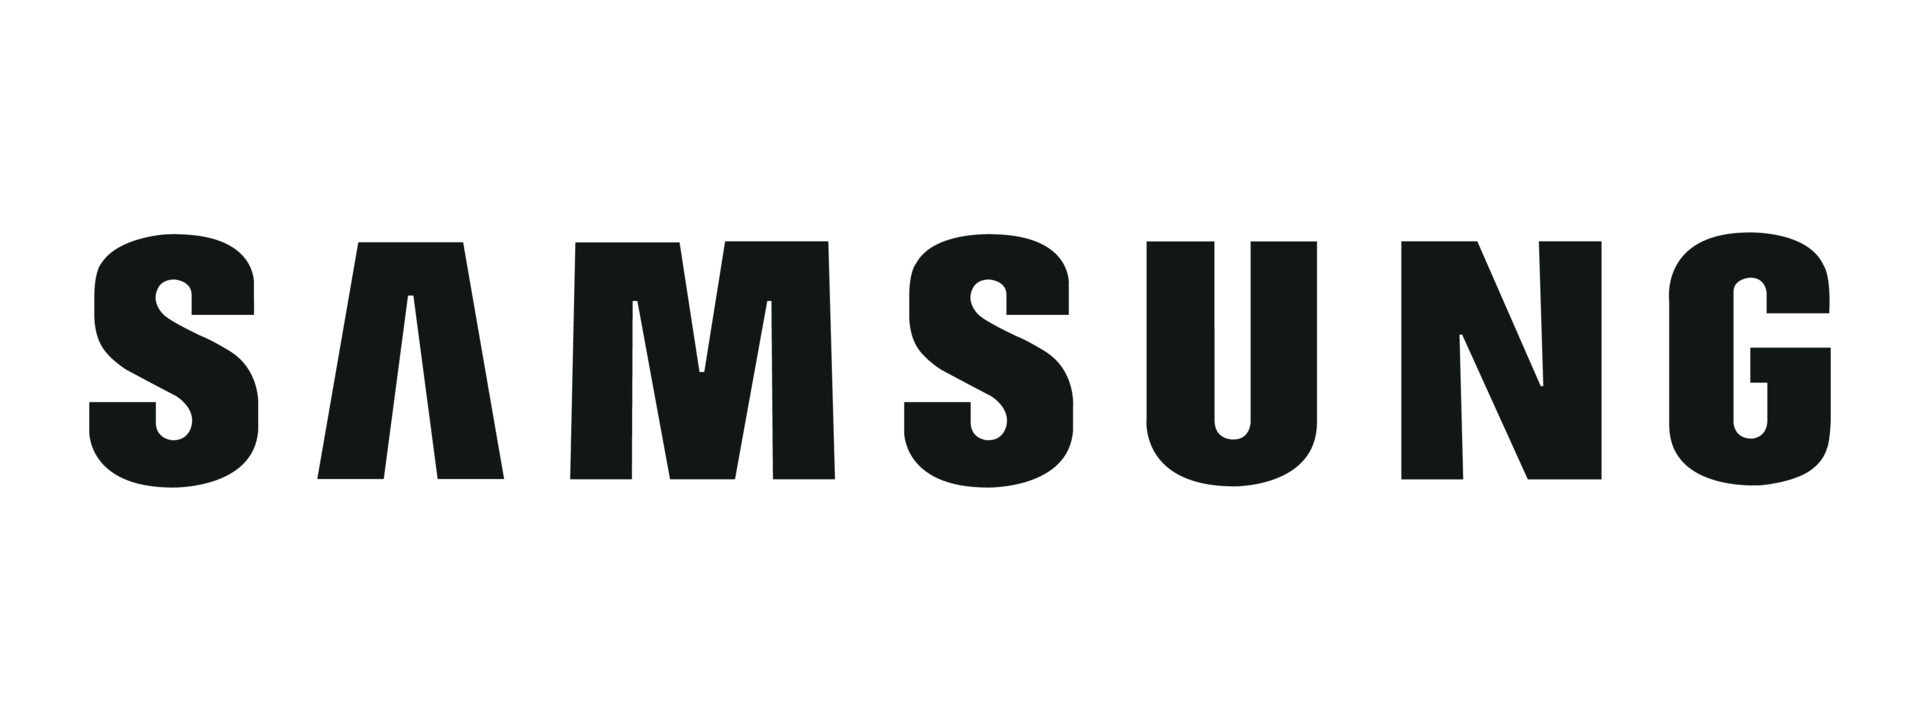 مكيفات سبليت سامسونج | Samsung